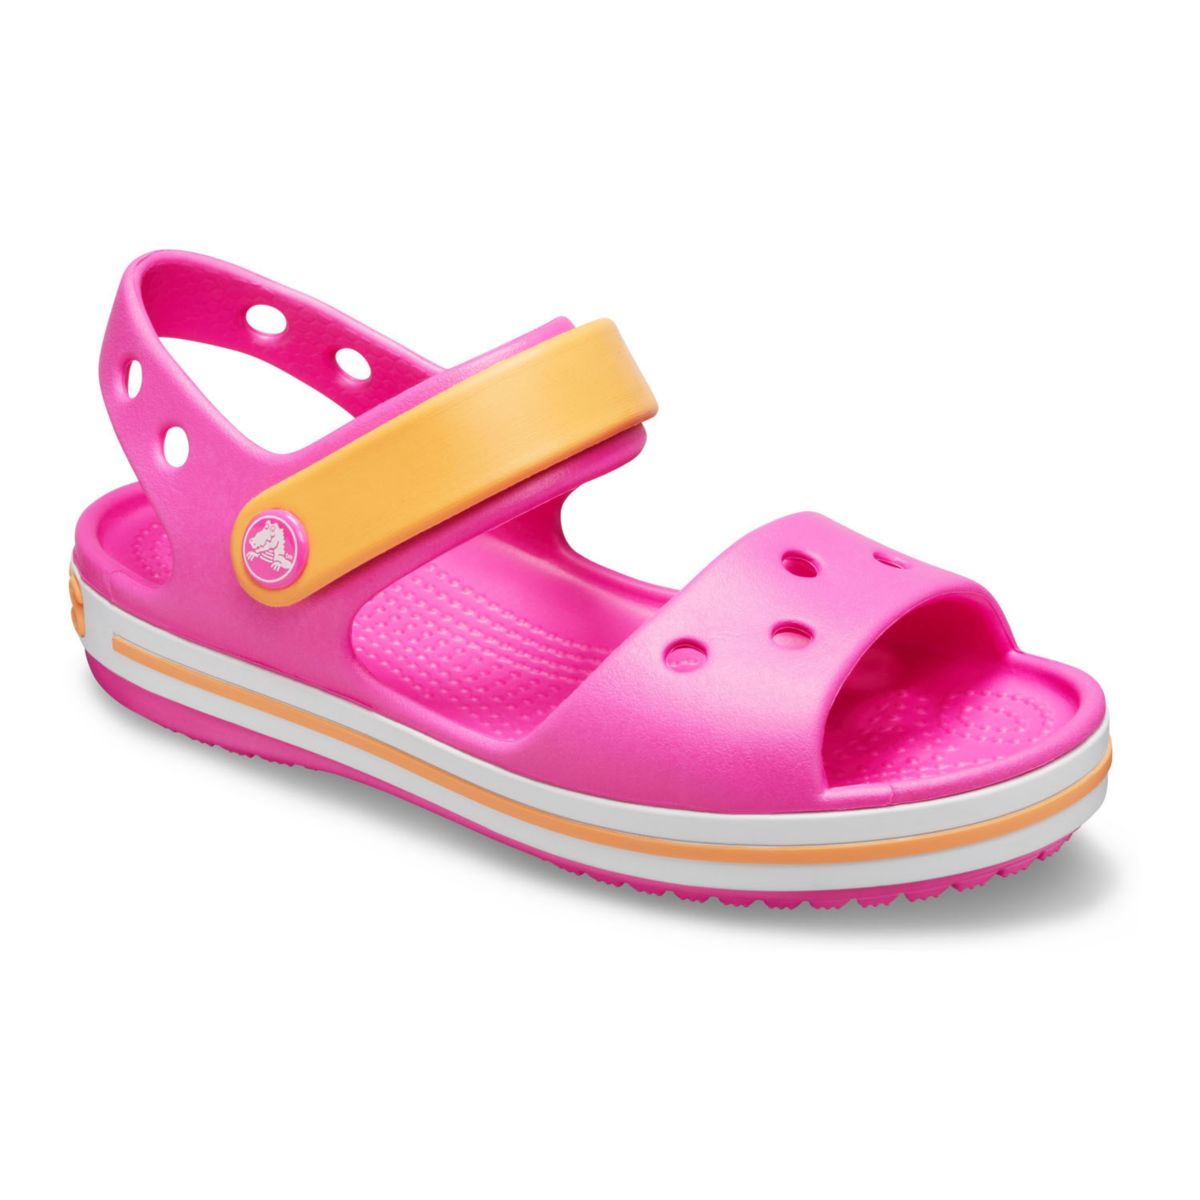 Крокс сандали. Сандалии Crocs Crocband Sandal. Сандалии для девочек Crocs Crocband Sandal Kids. Сандалии Crocs Crocband Sandal 28. Детские шлепки крокс.